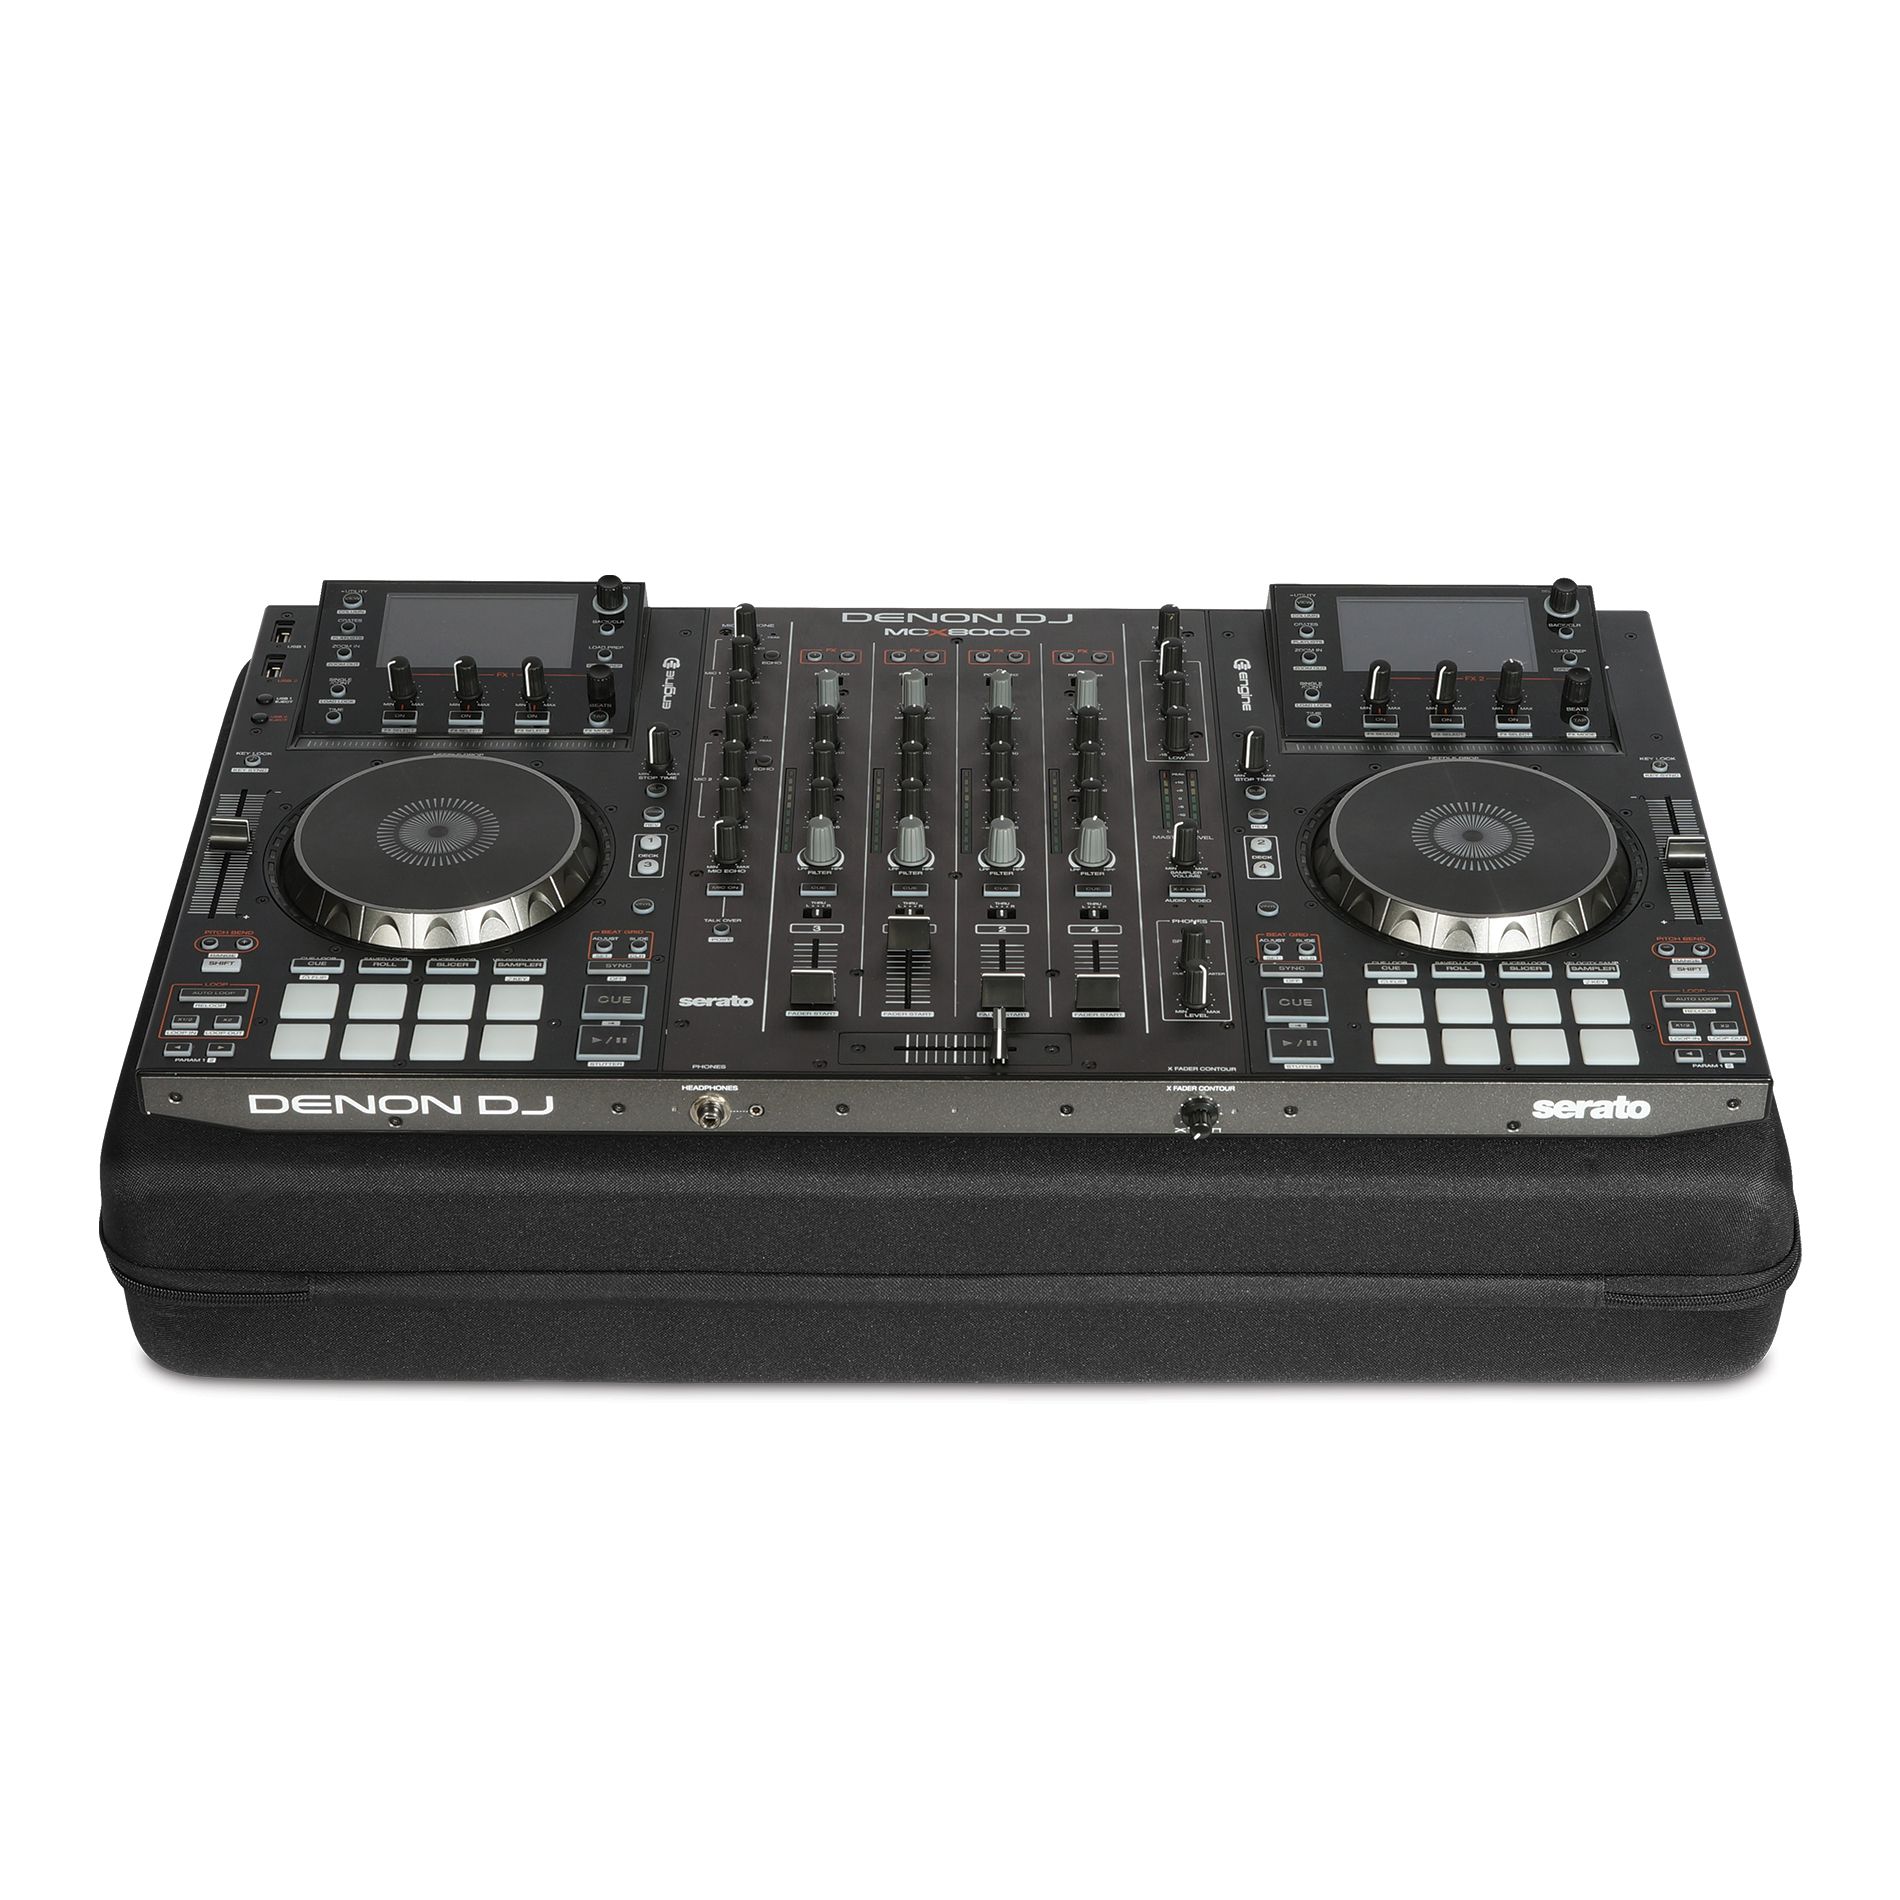 Udg U8305bl Pour Xdj-rx2 / Mcx8000 / Roland 808 - DJ Gigbag - Variation 2